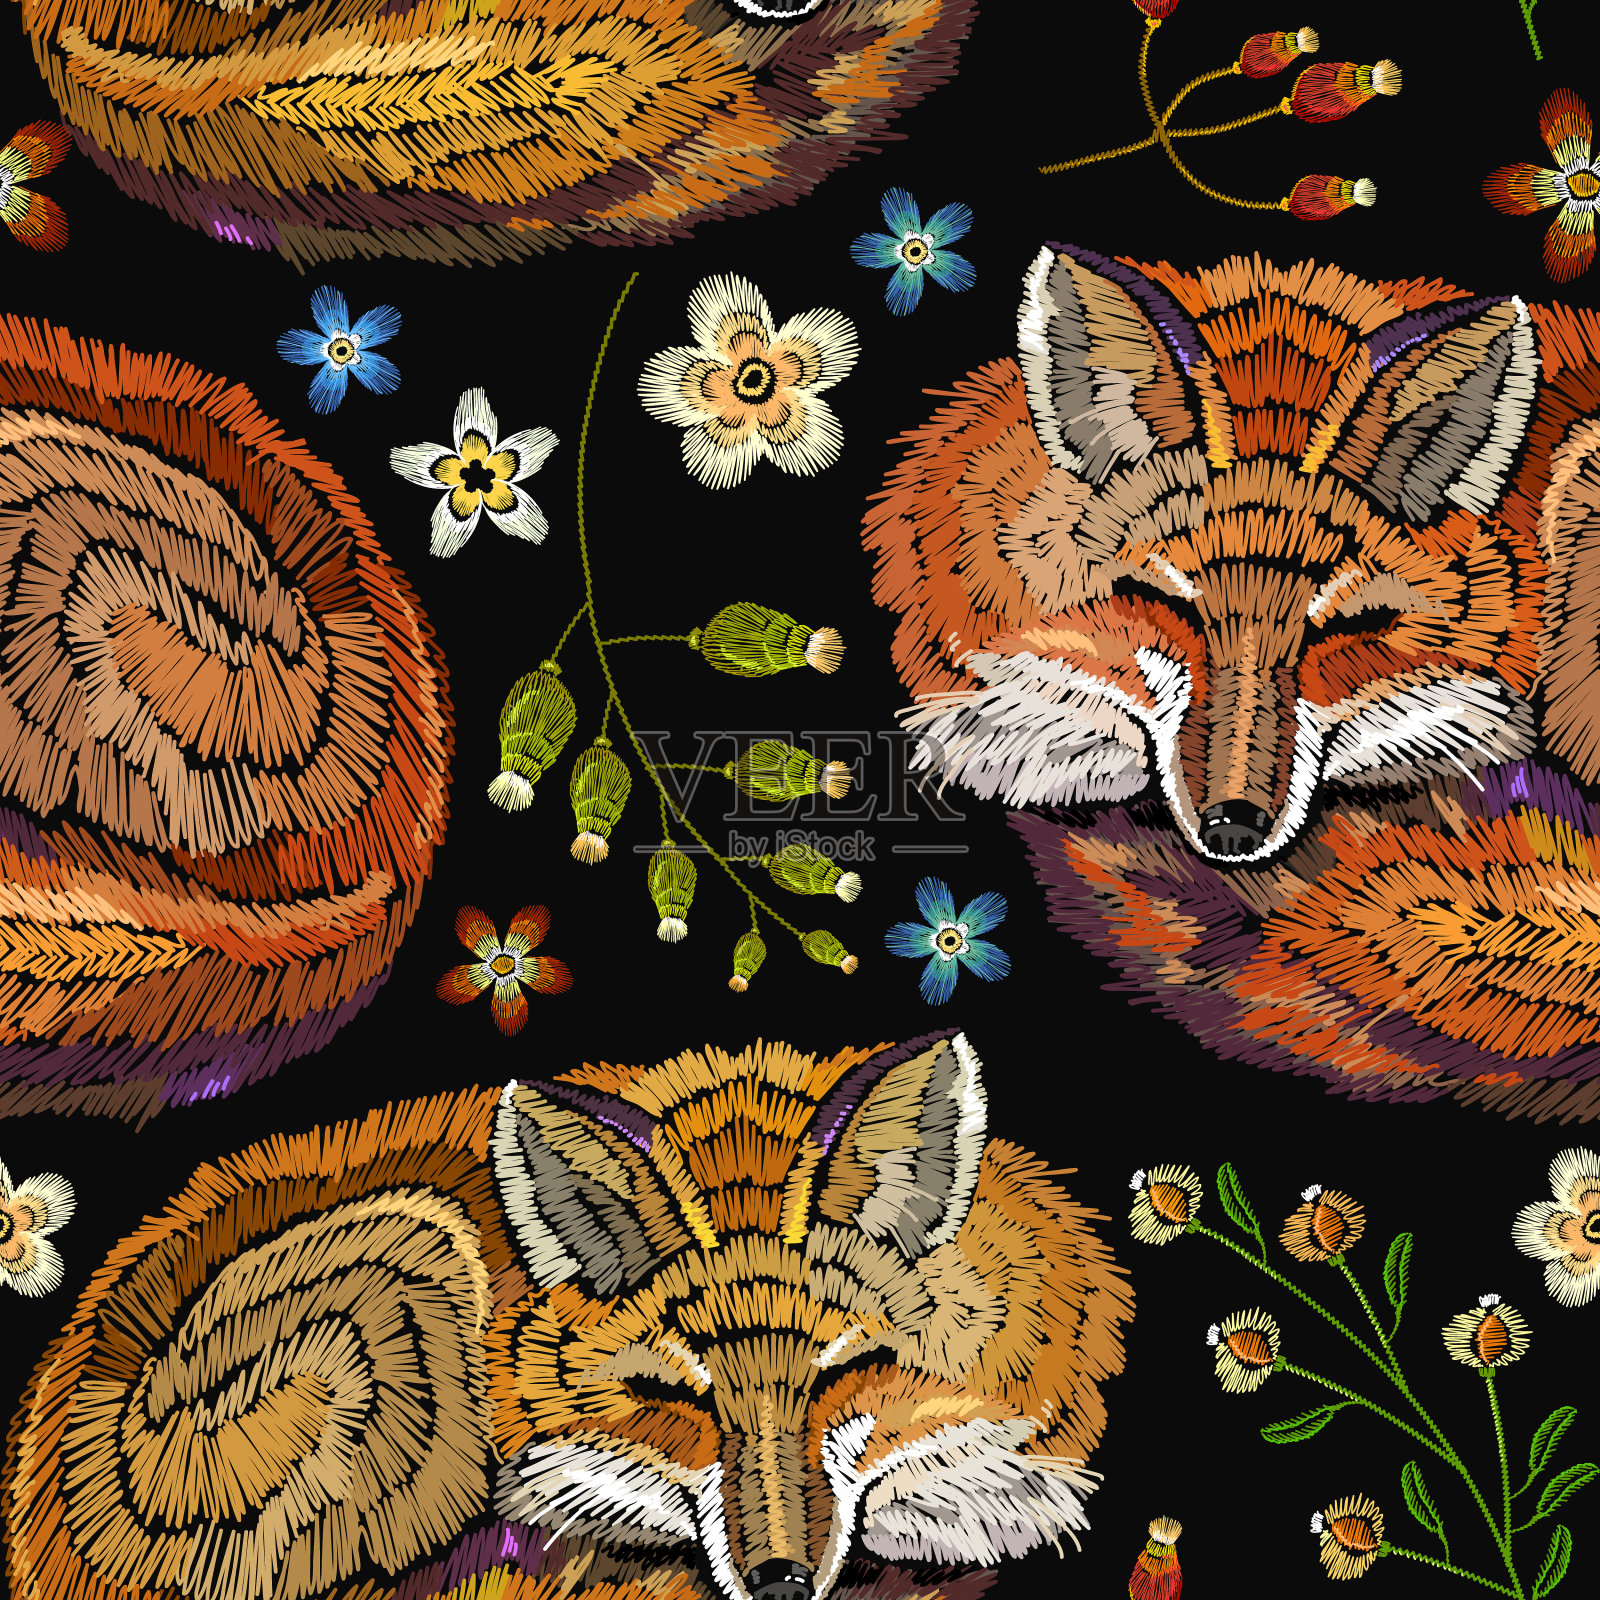 刺绣睡狐和花无缝图案。时尚的服装设计模板。经典无缝刺绣背景。红狐狸在花中睡觉插画图片素材